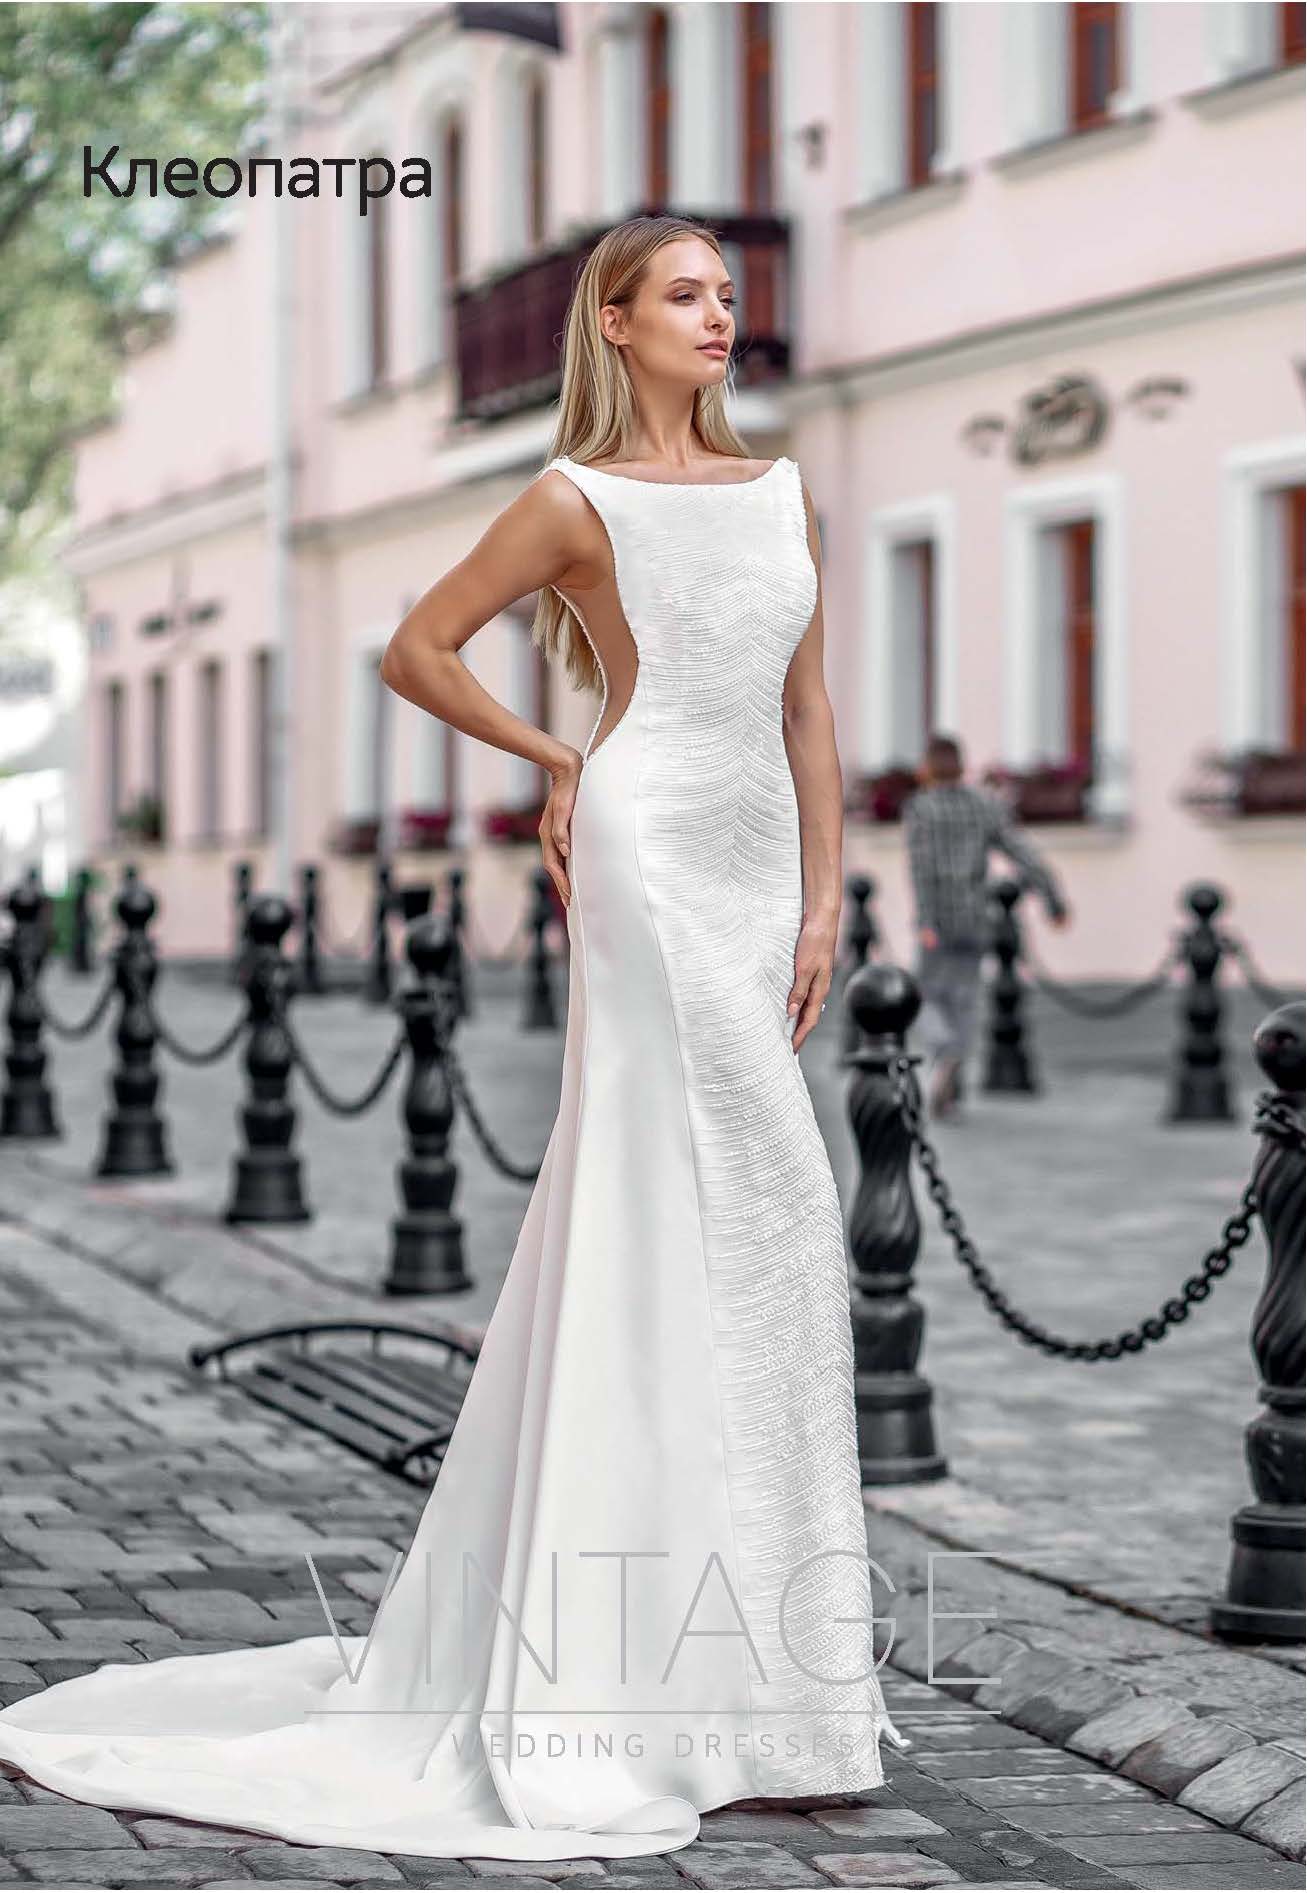 Свадебное платье Vintage 2019